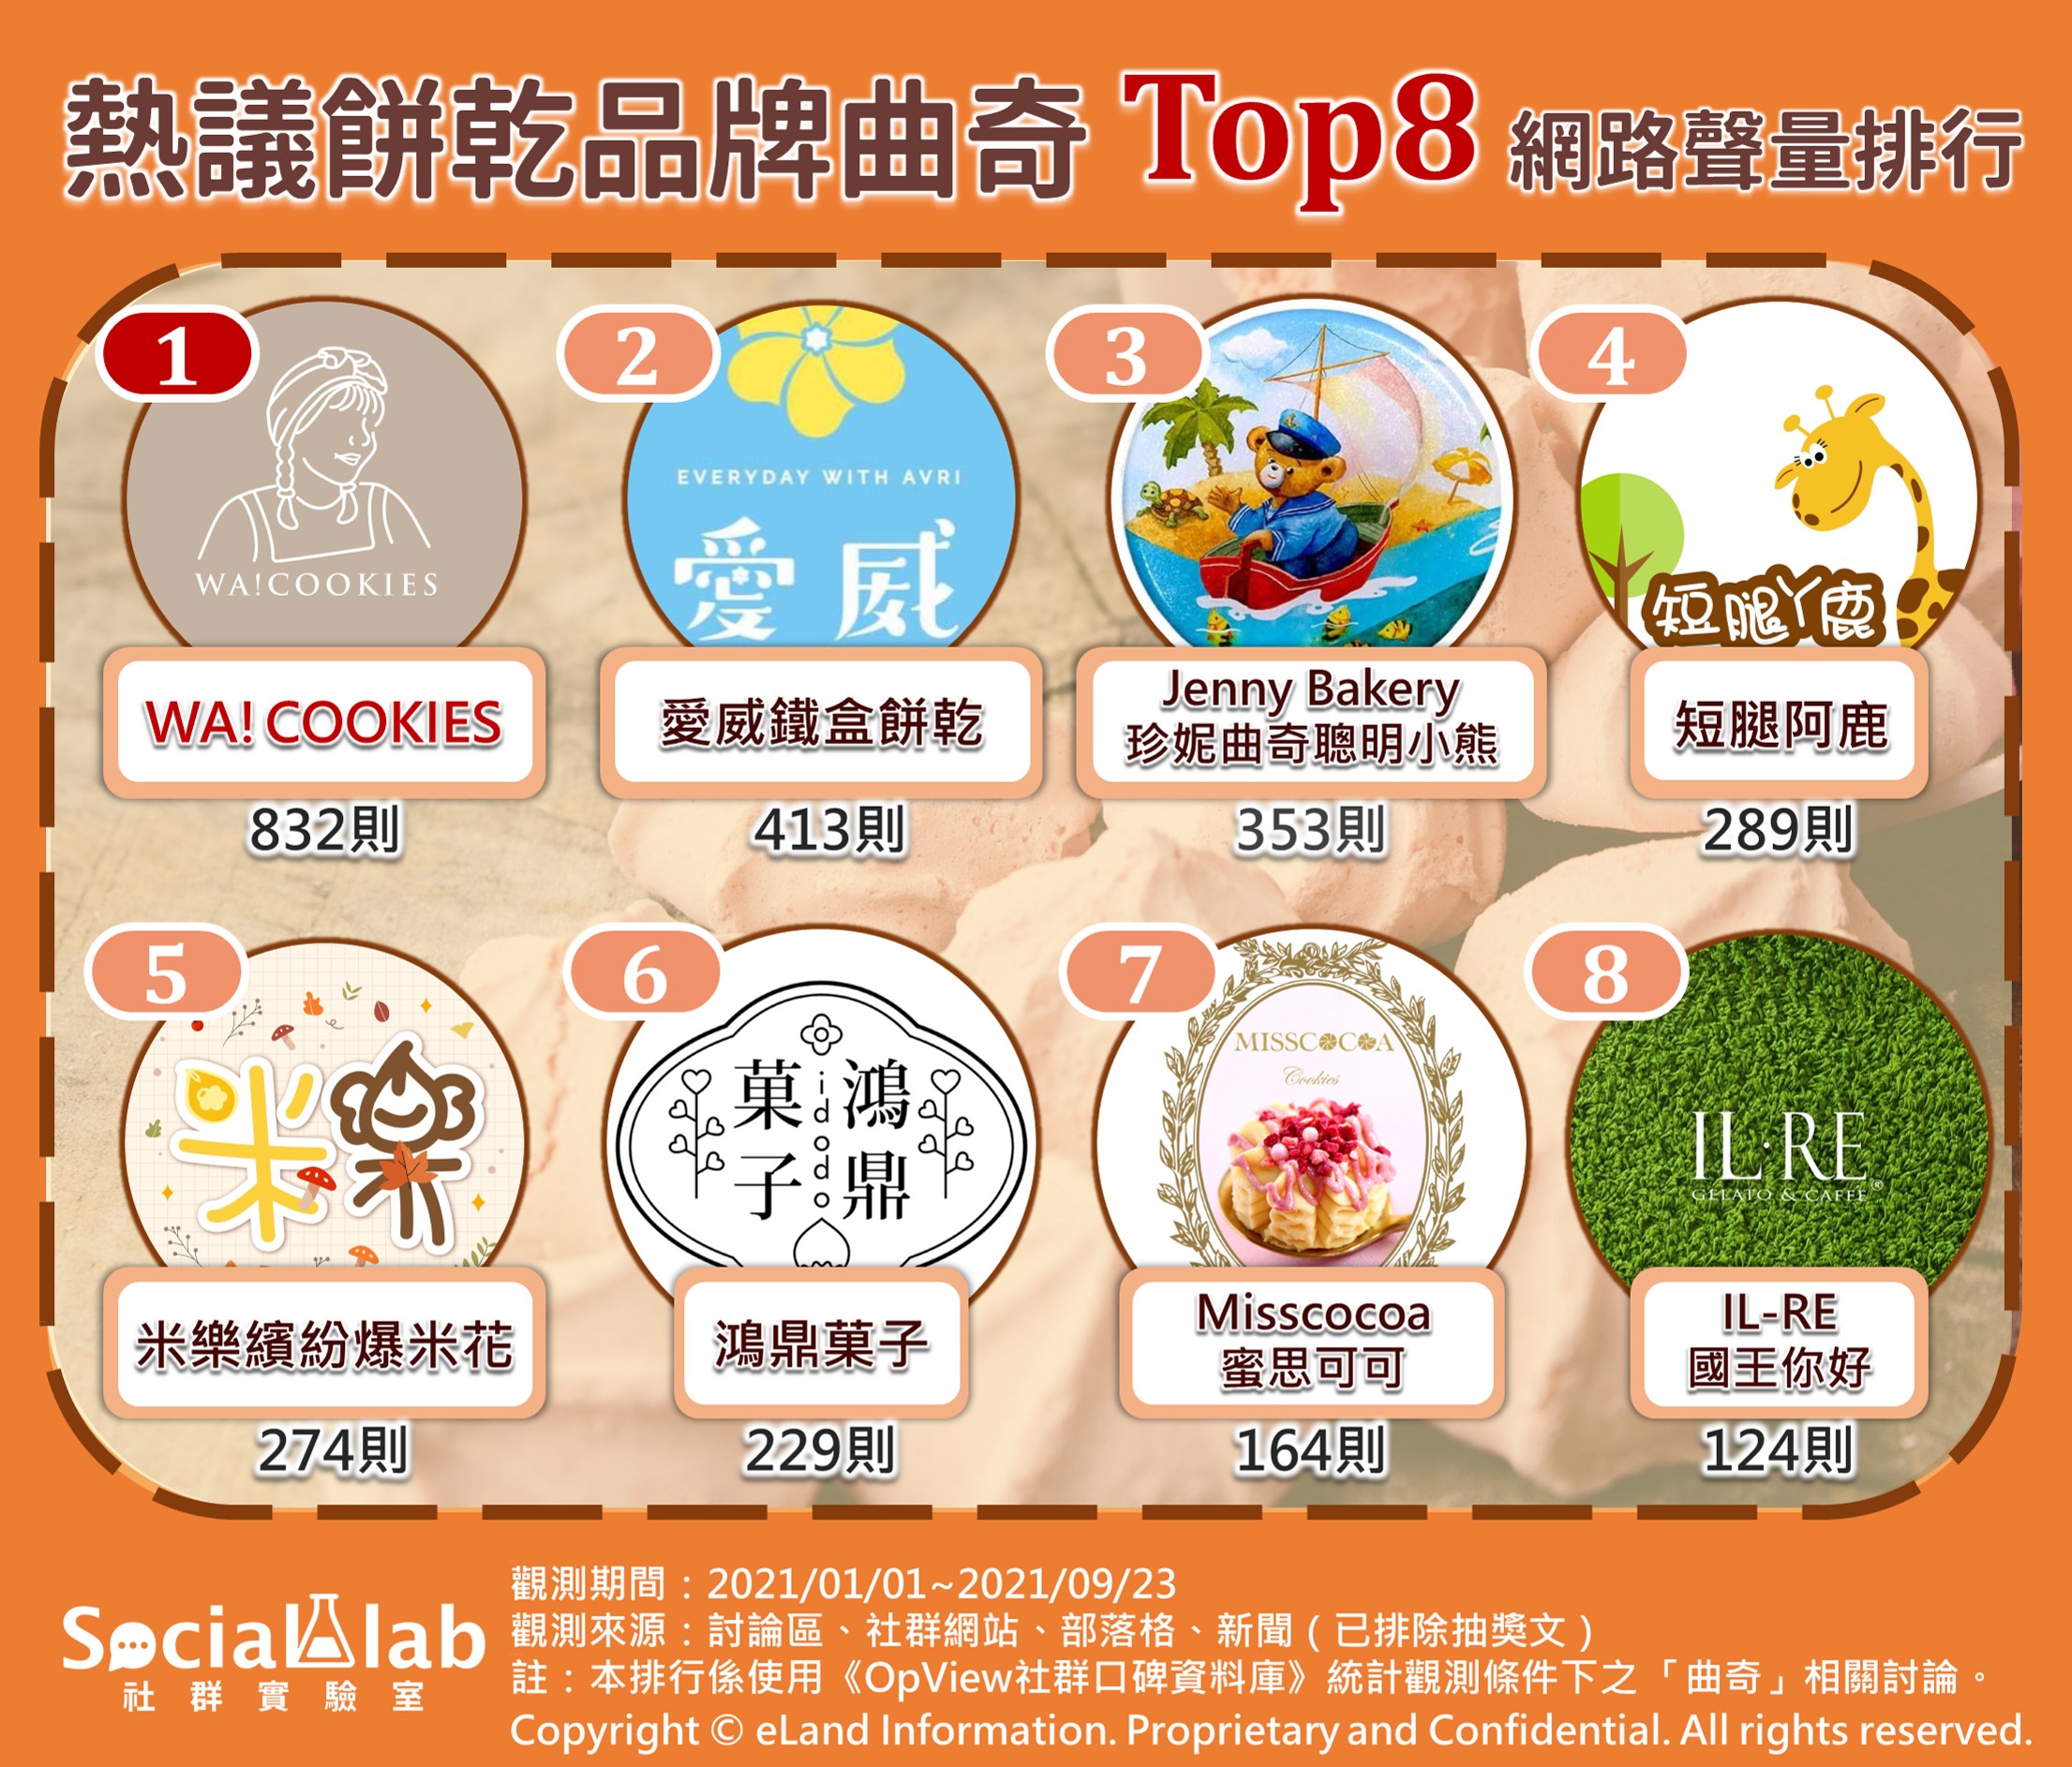 熱議餅乾品牌曲奇top8網路聲量排行